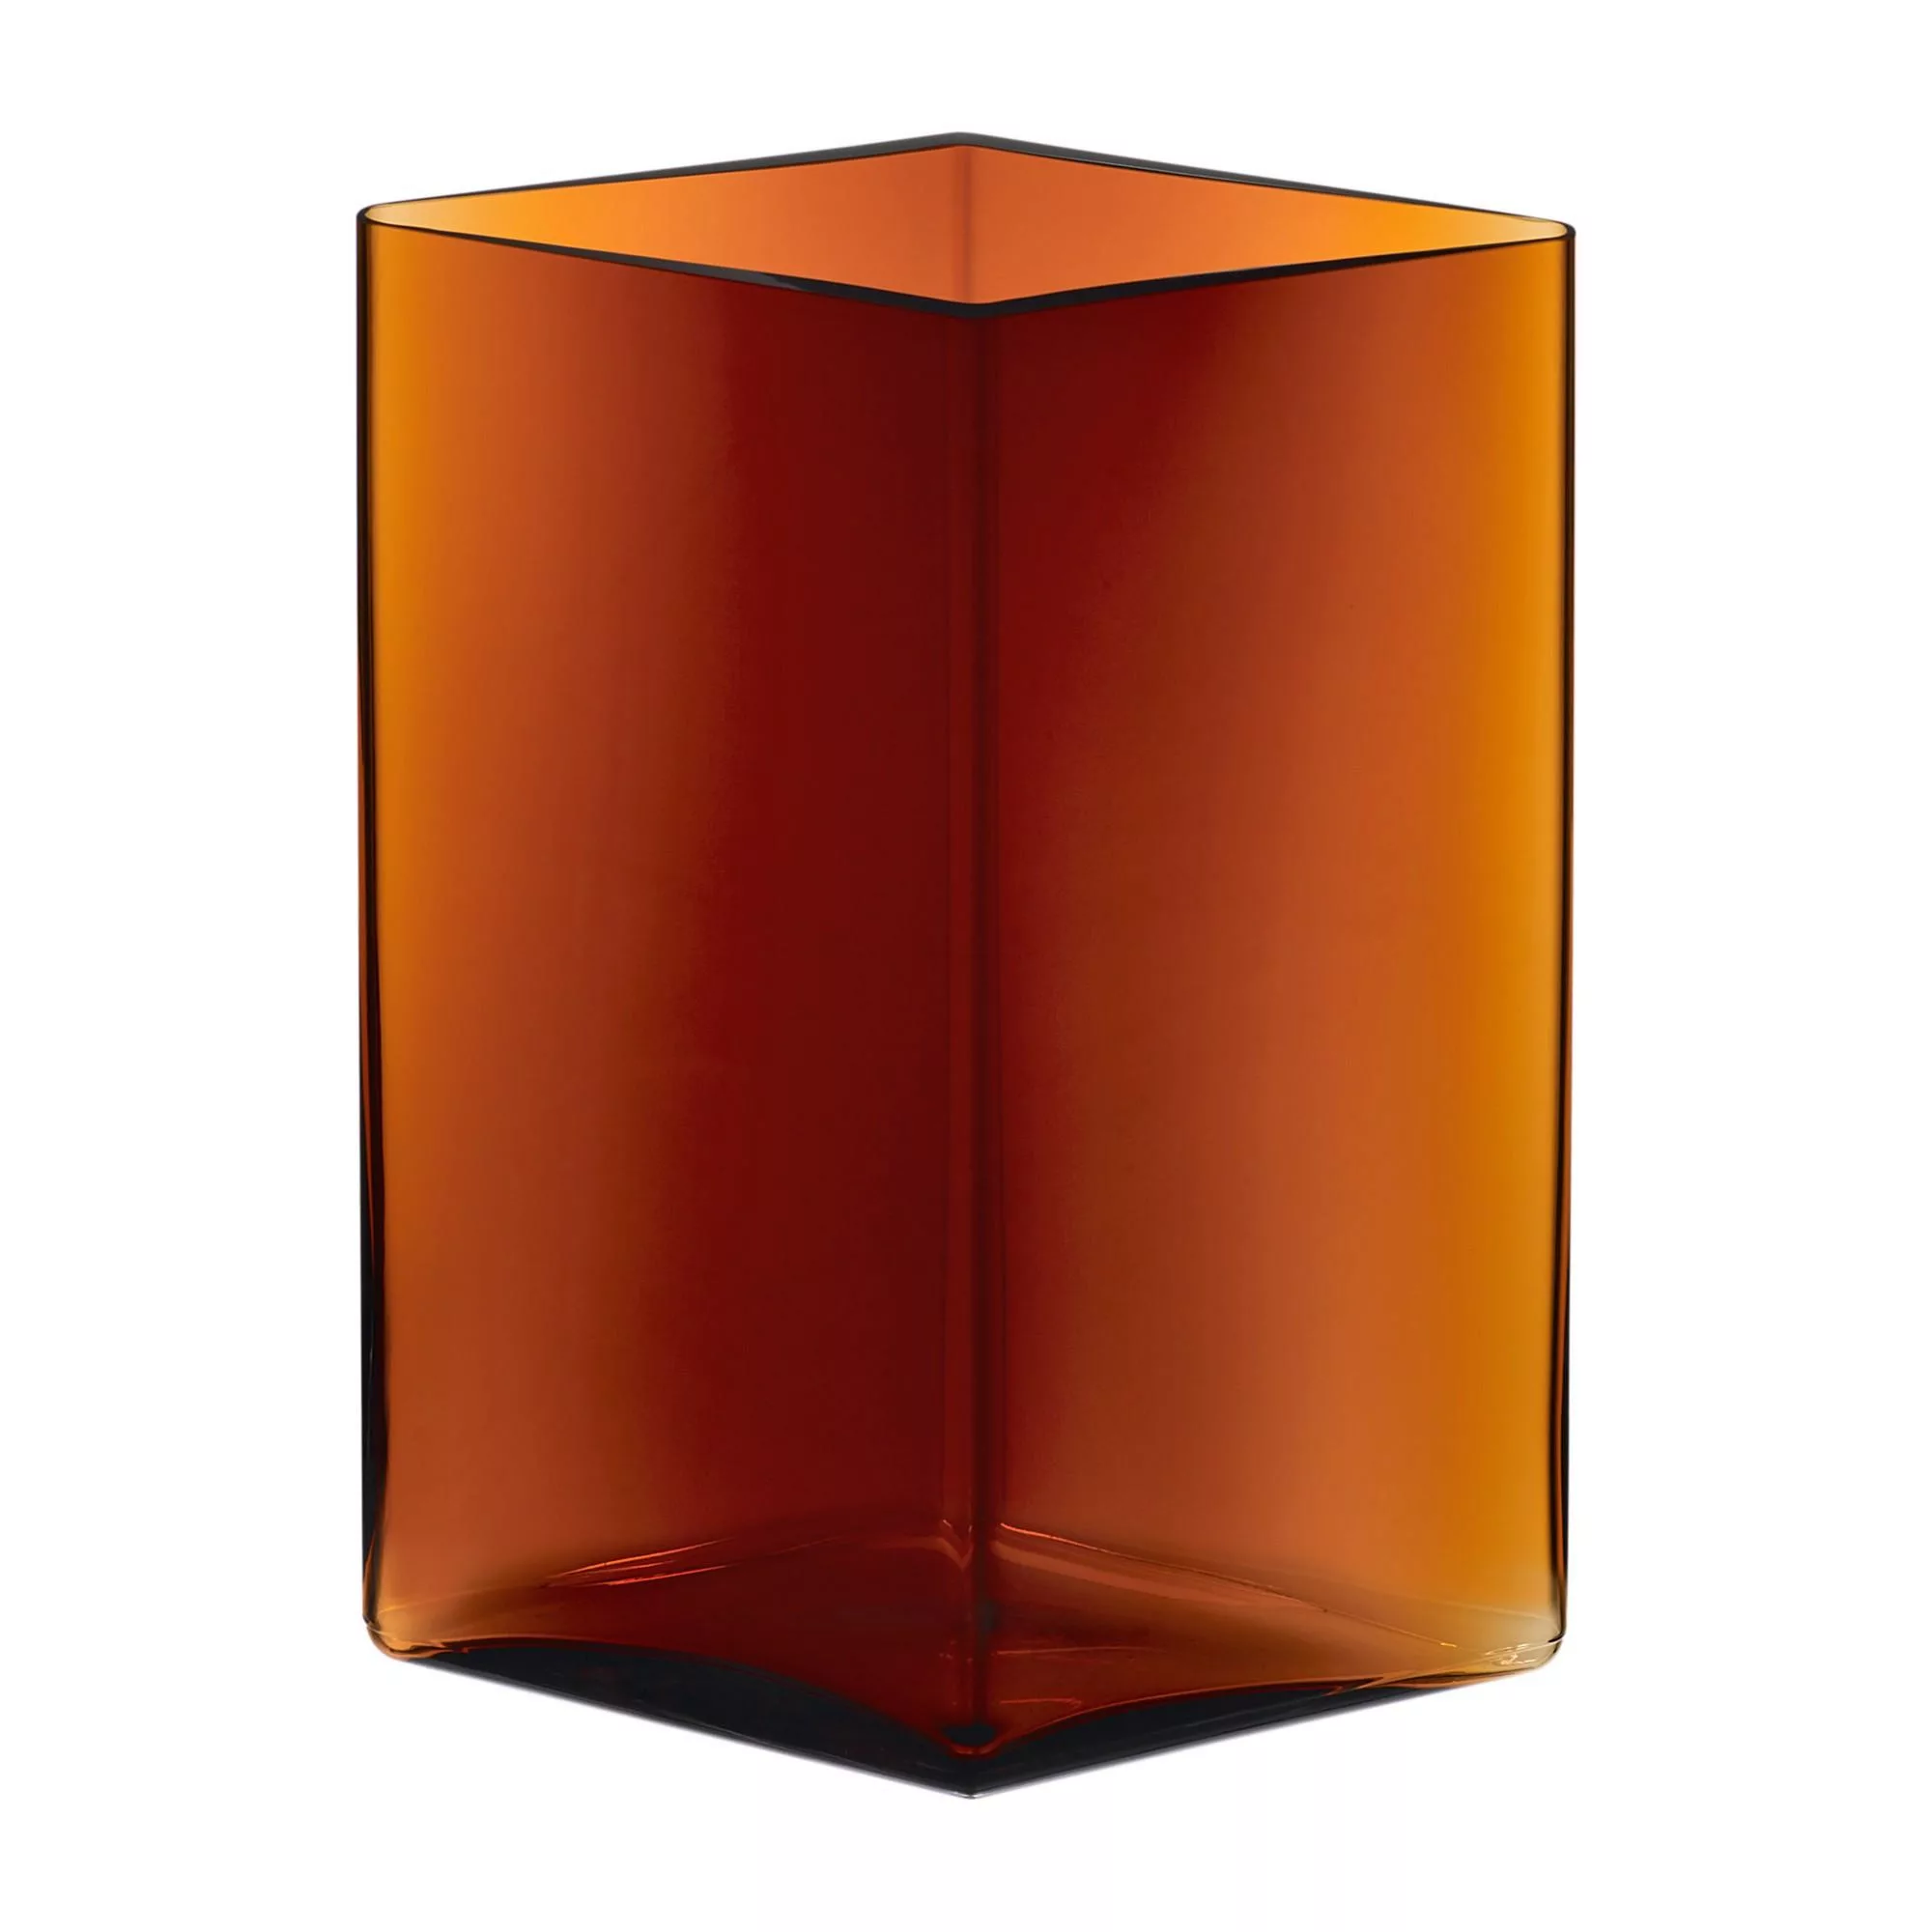 iittala - Ruutu Vase 205x270mm - kupfer/rautenförmig/LxBxH 20,5x20,5x27cm/H günstig online kaufen